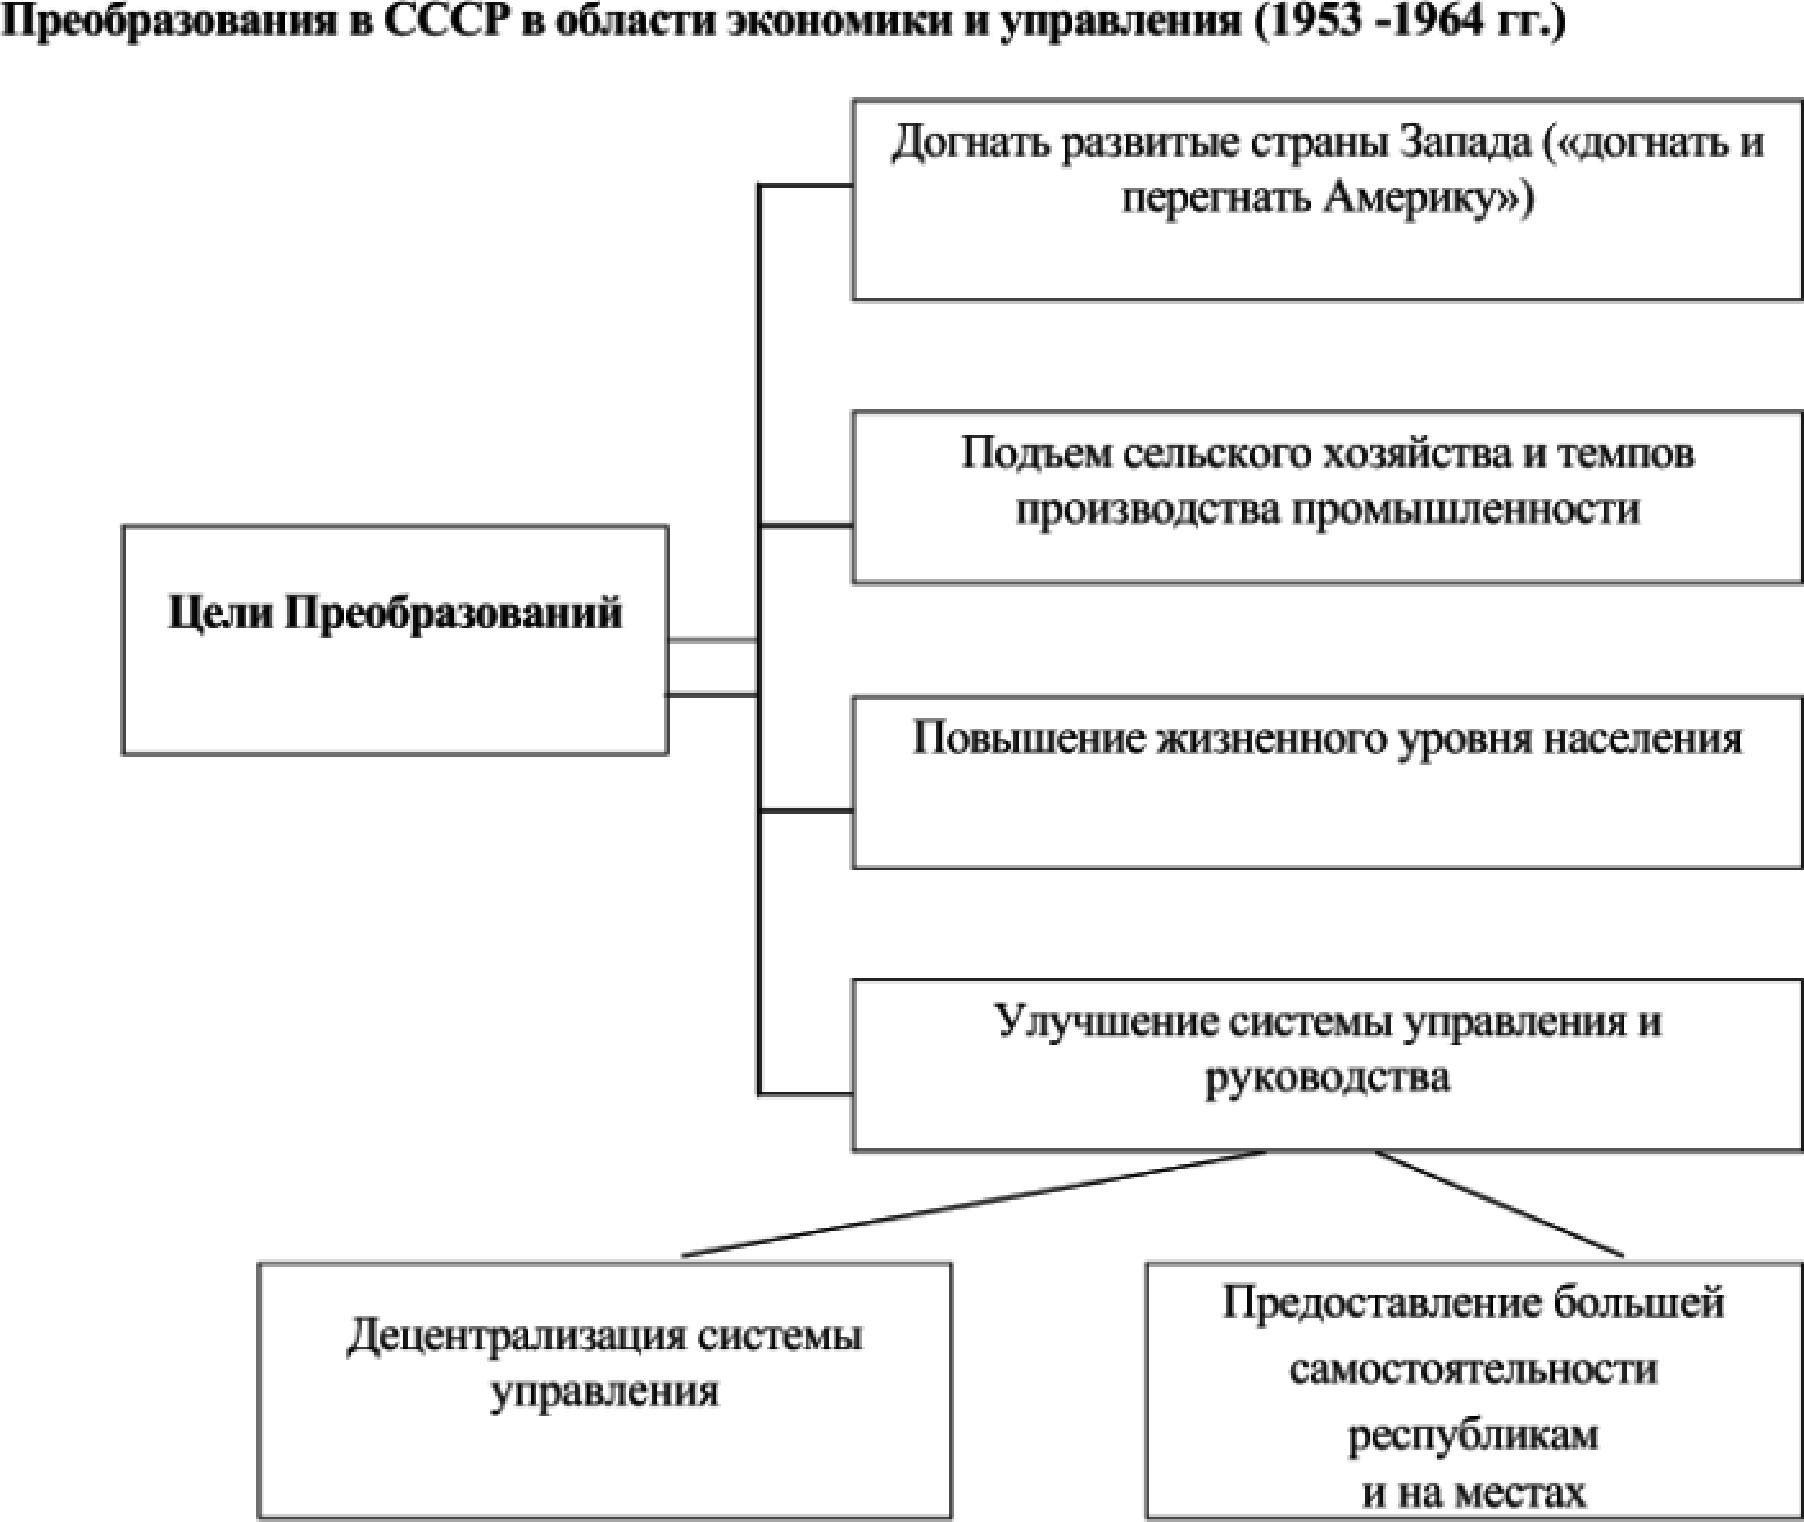 Основные направления изменений государственно-правового механизма после смерти Сталина (1953-1964 гг